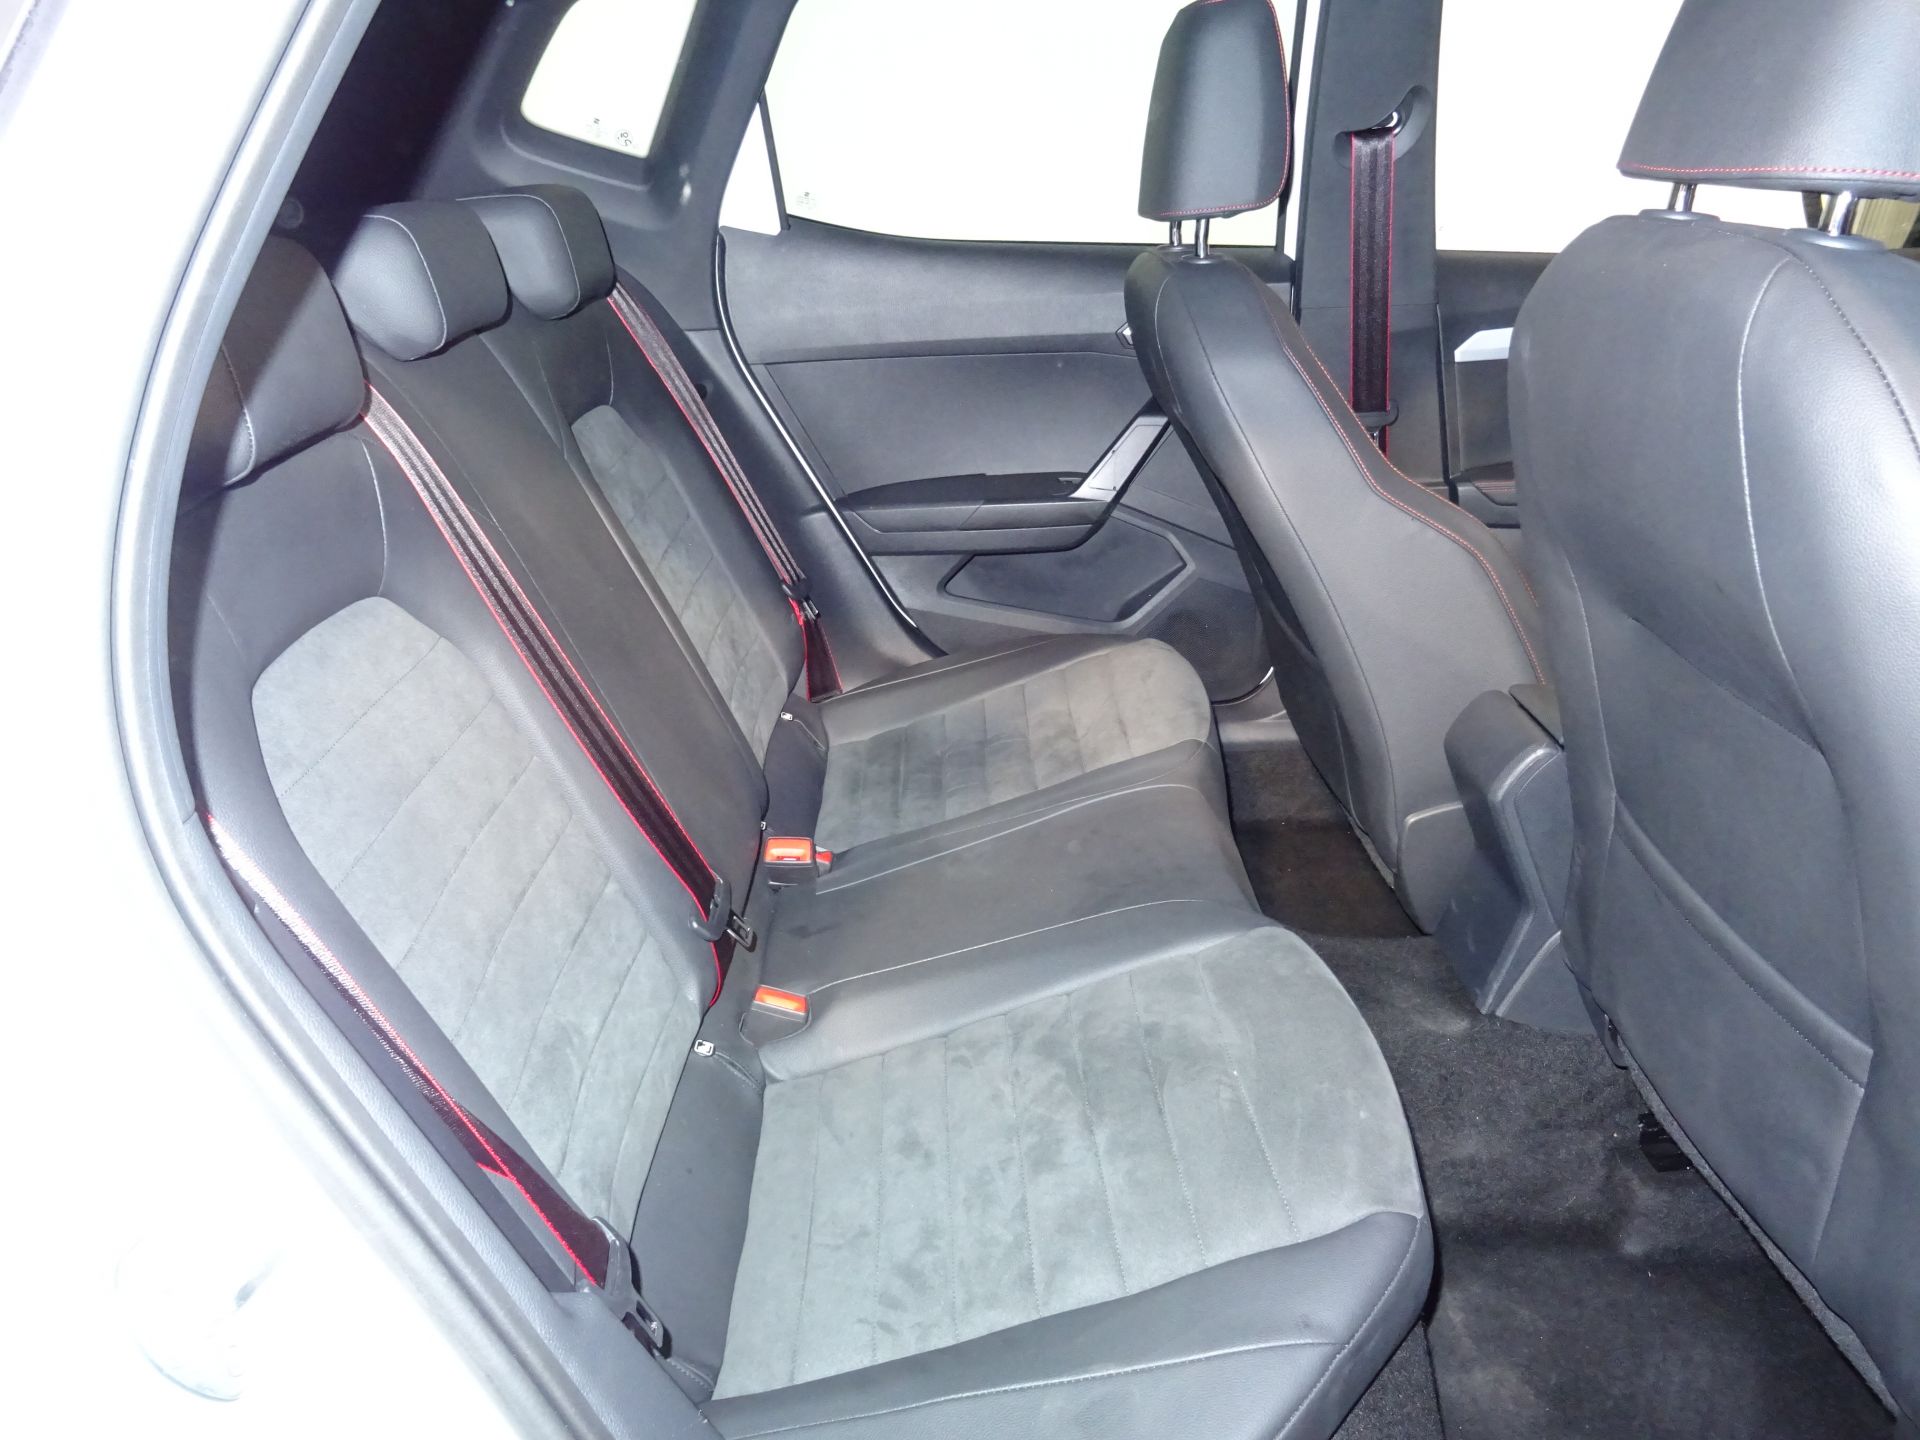 SEAT Arona 1.0 TSI 81kW (110CV) DSG FR Plus